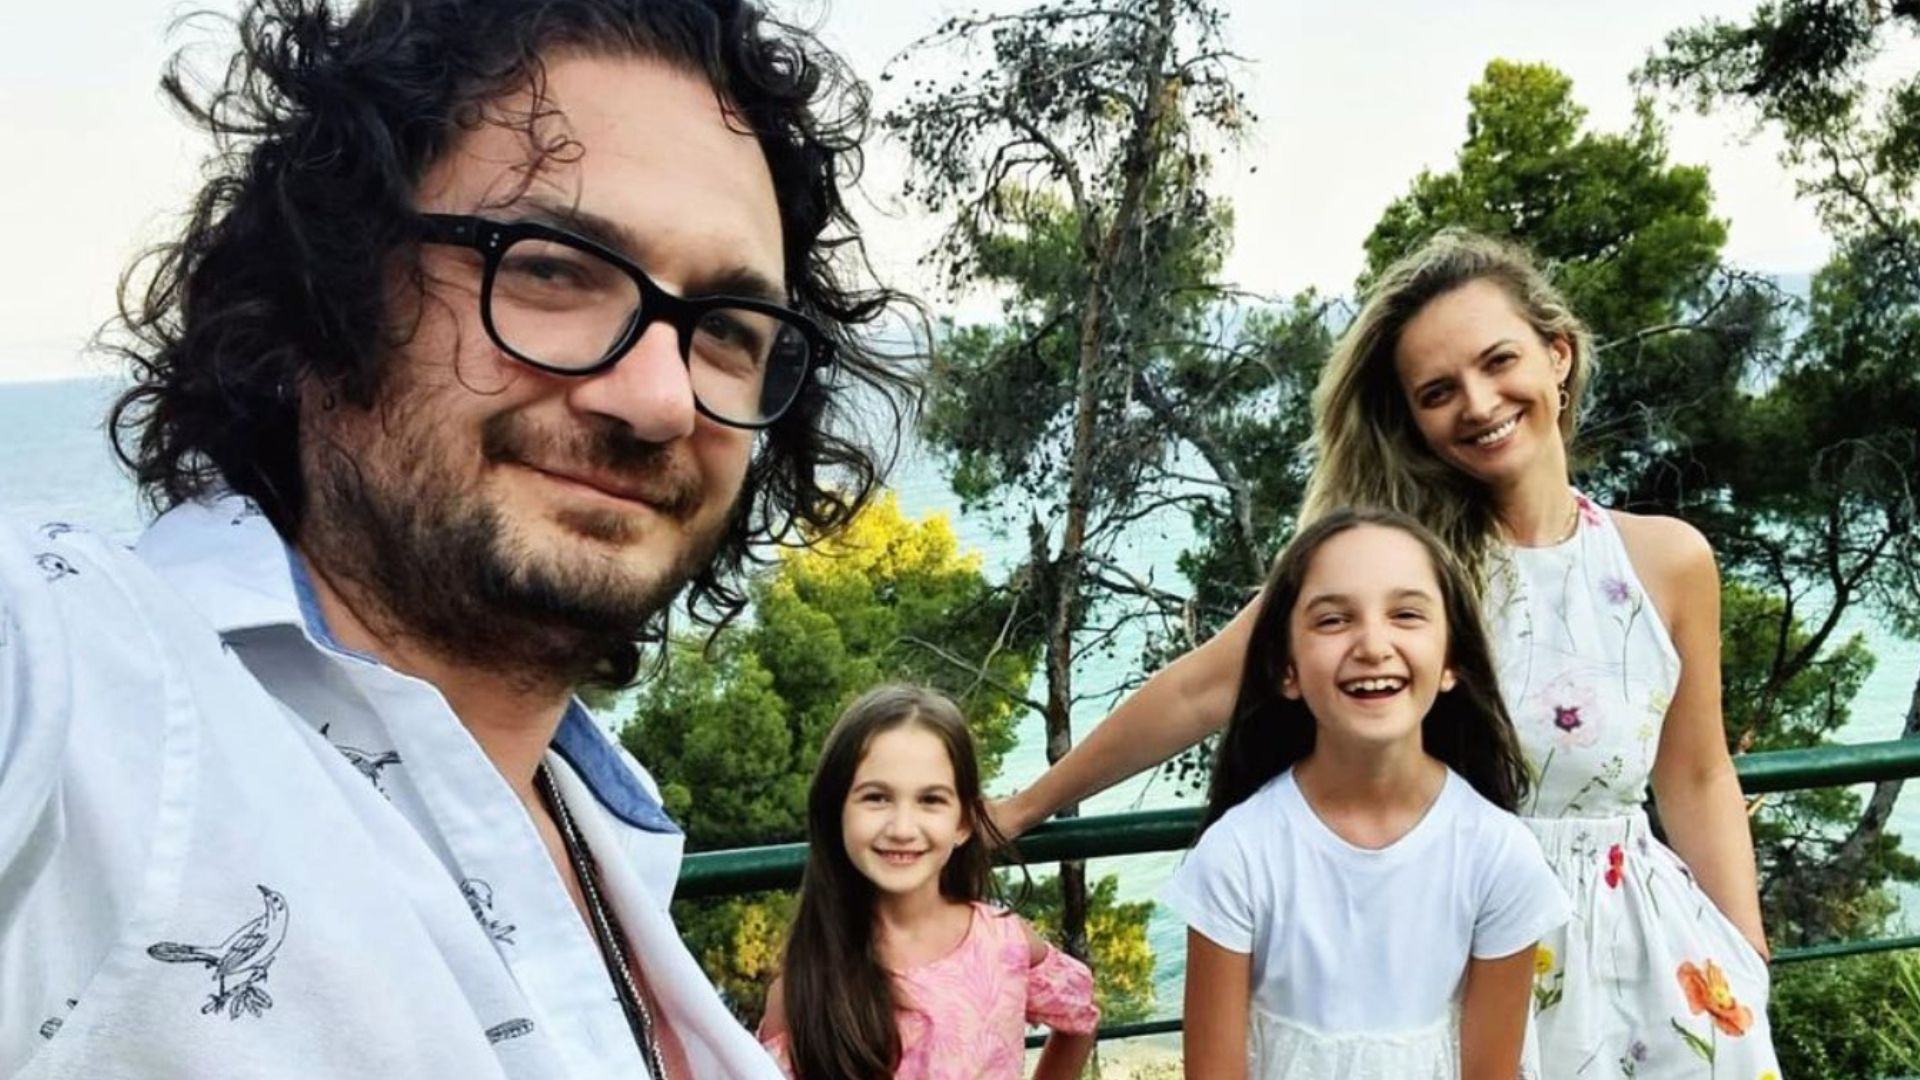 Ce familie frumoasa are Chef Florin Dumitrescu! Fostul jurat de la "Chefi la cutite" are o sotie superba si doua fetite care cresc pe zi ce trece